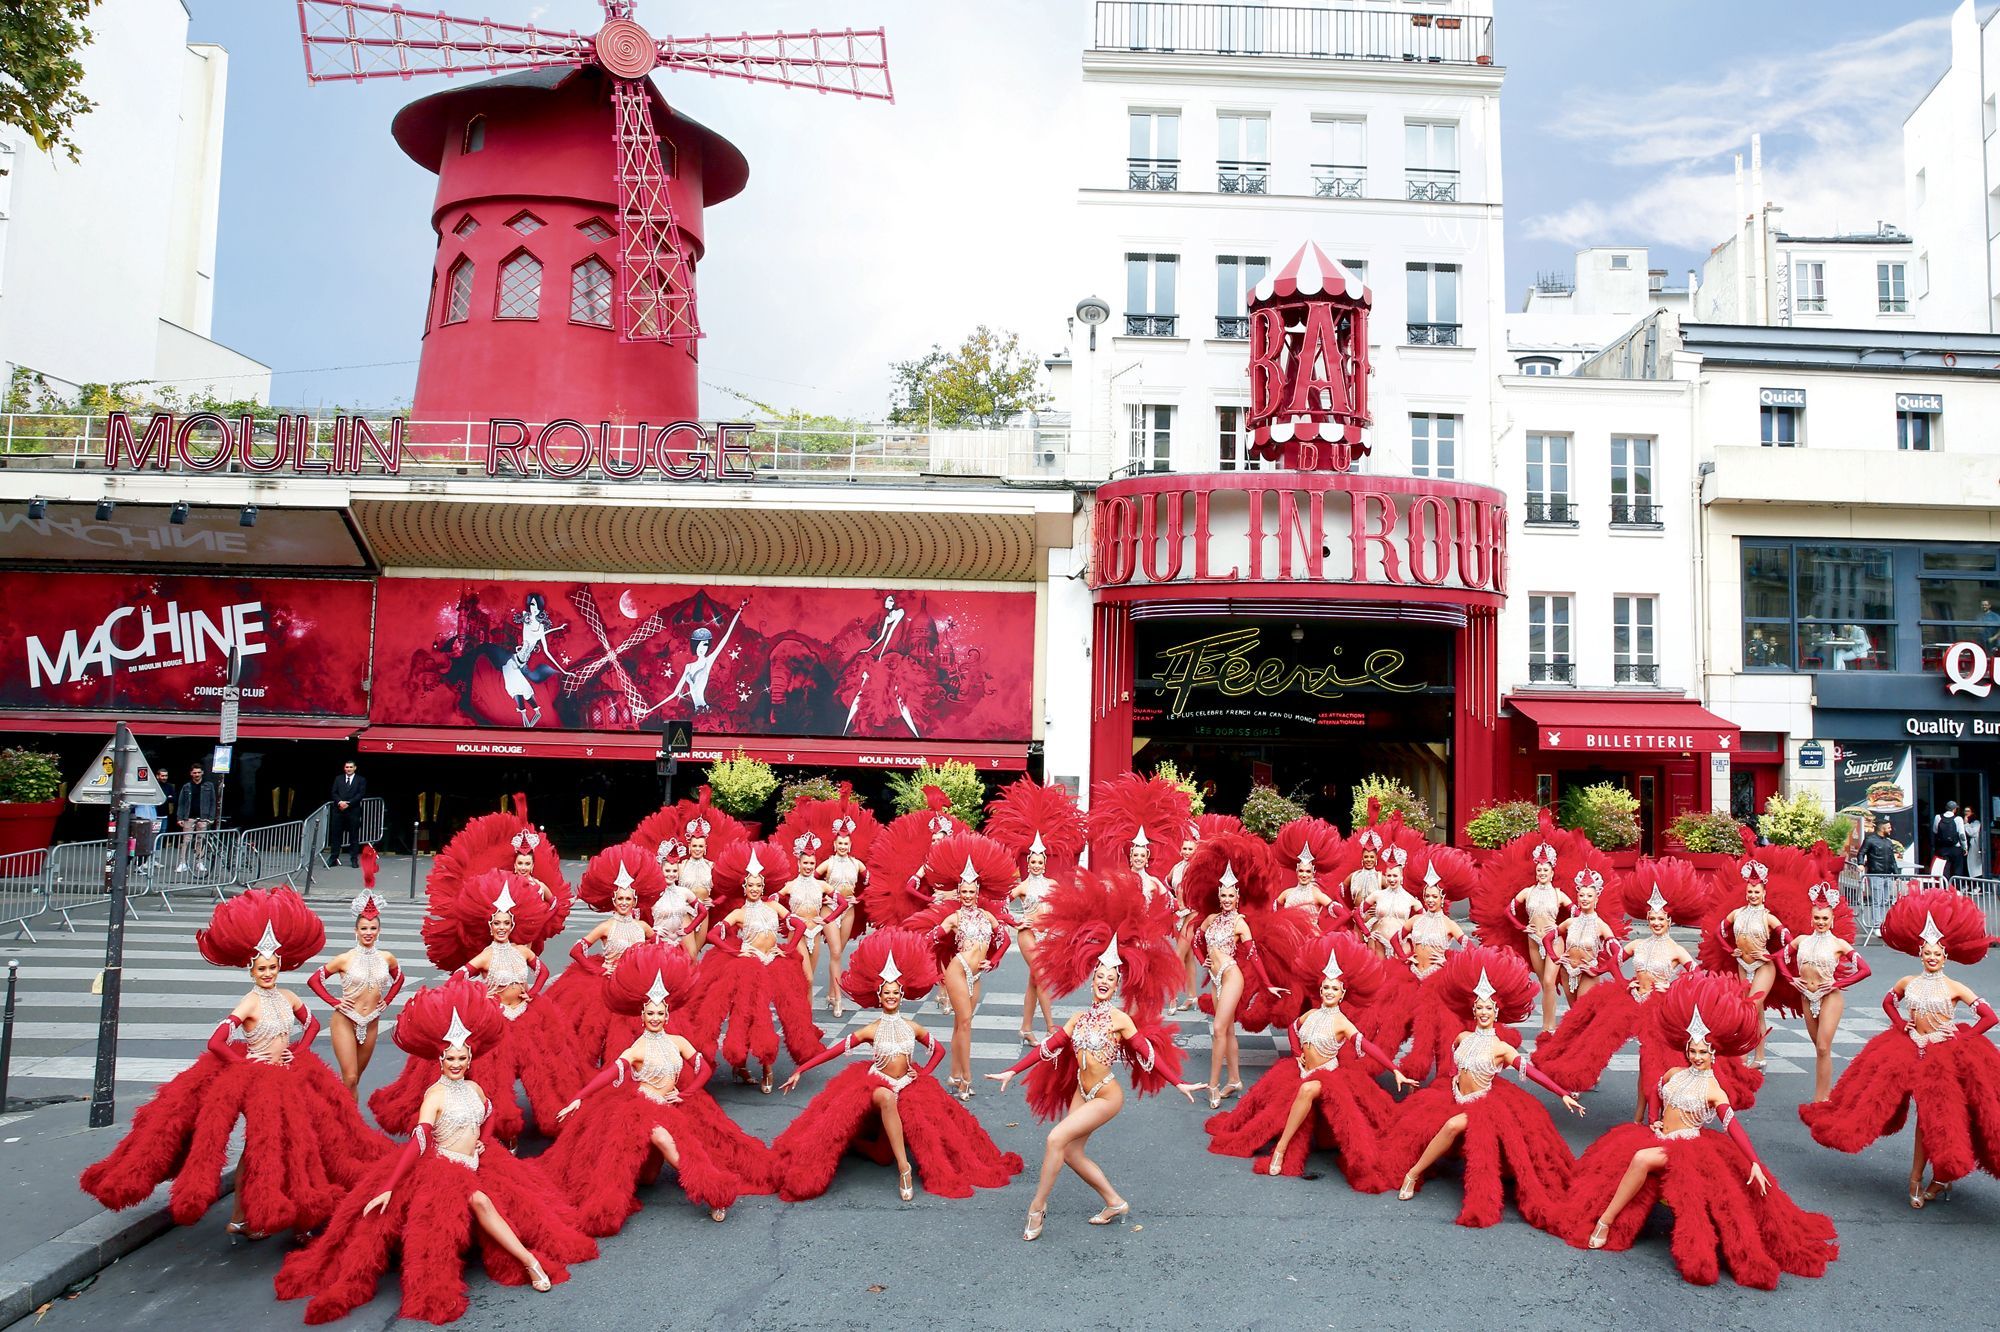 Le-Moulin-Rouge-a-130-ans-ca-c-est-Paris.jpg